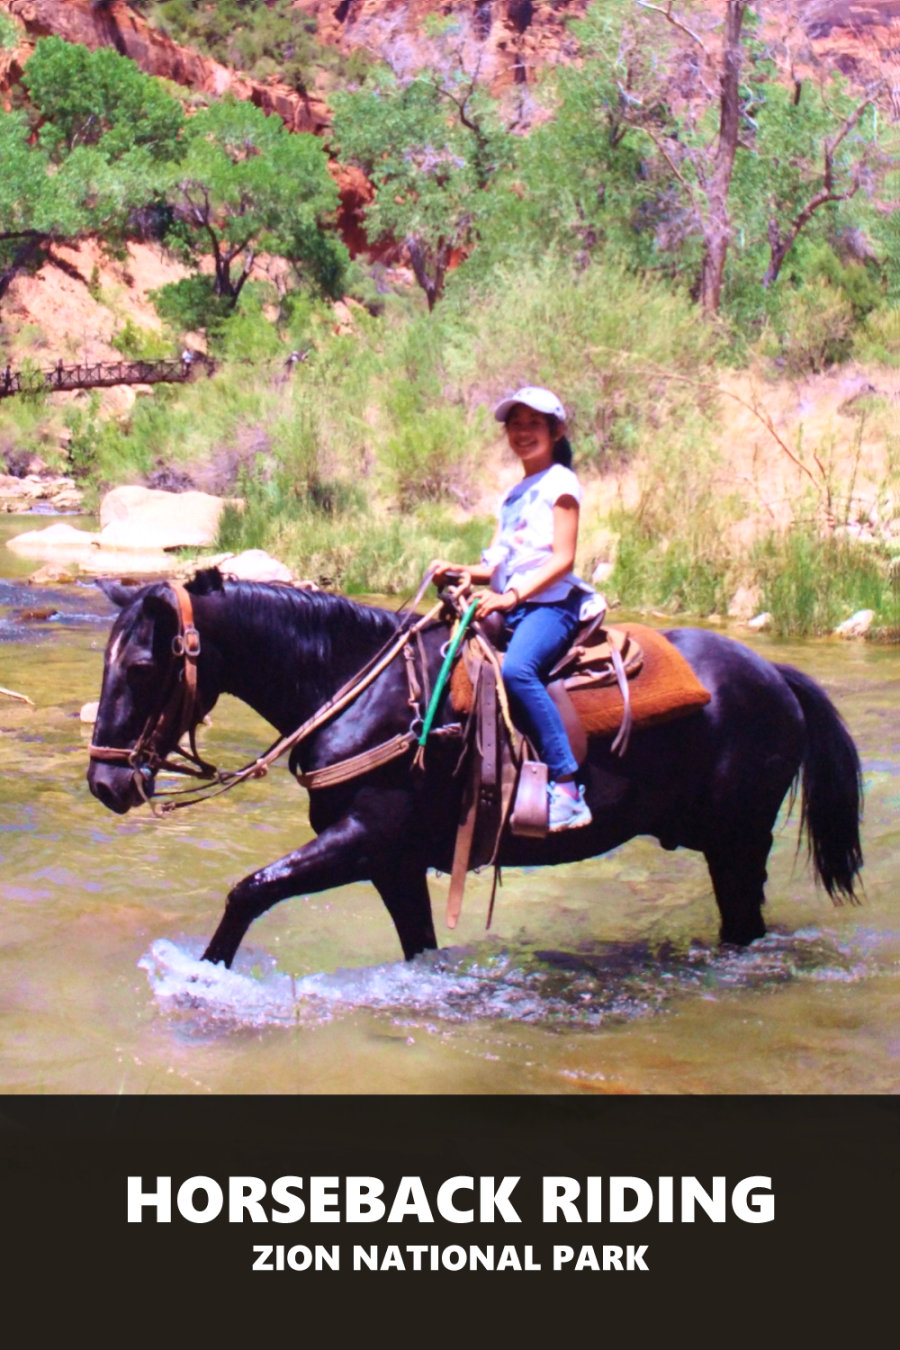 Horseback riding at Zion National Park